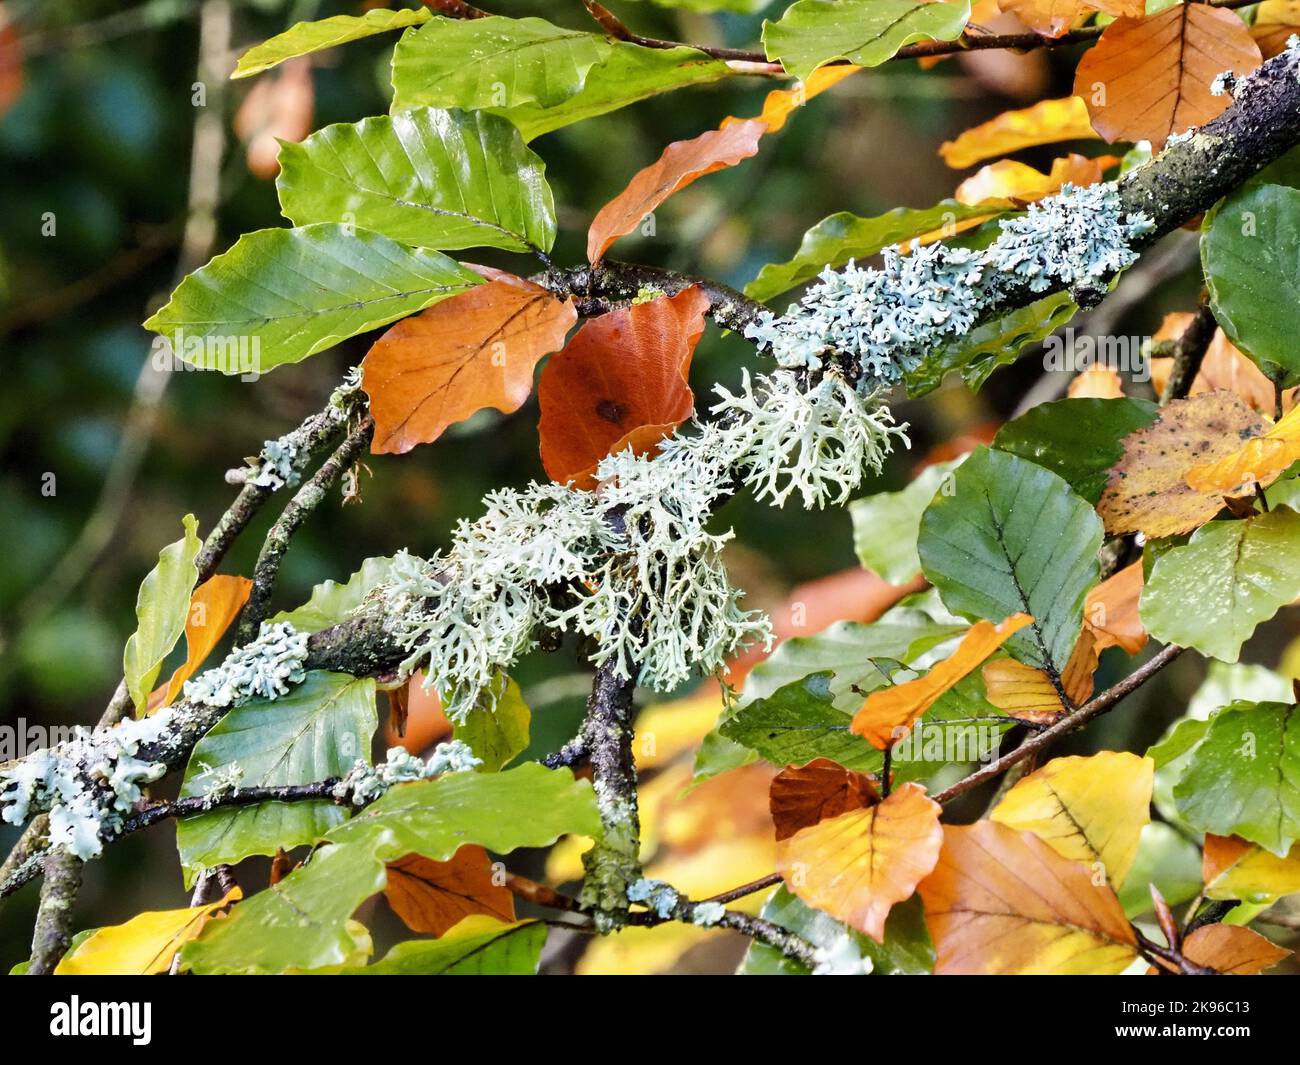 Lichen, Northern Ireland, UK Stock Photo